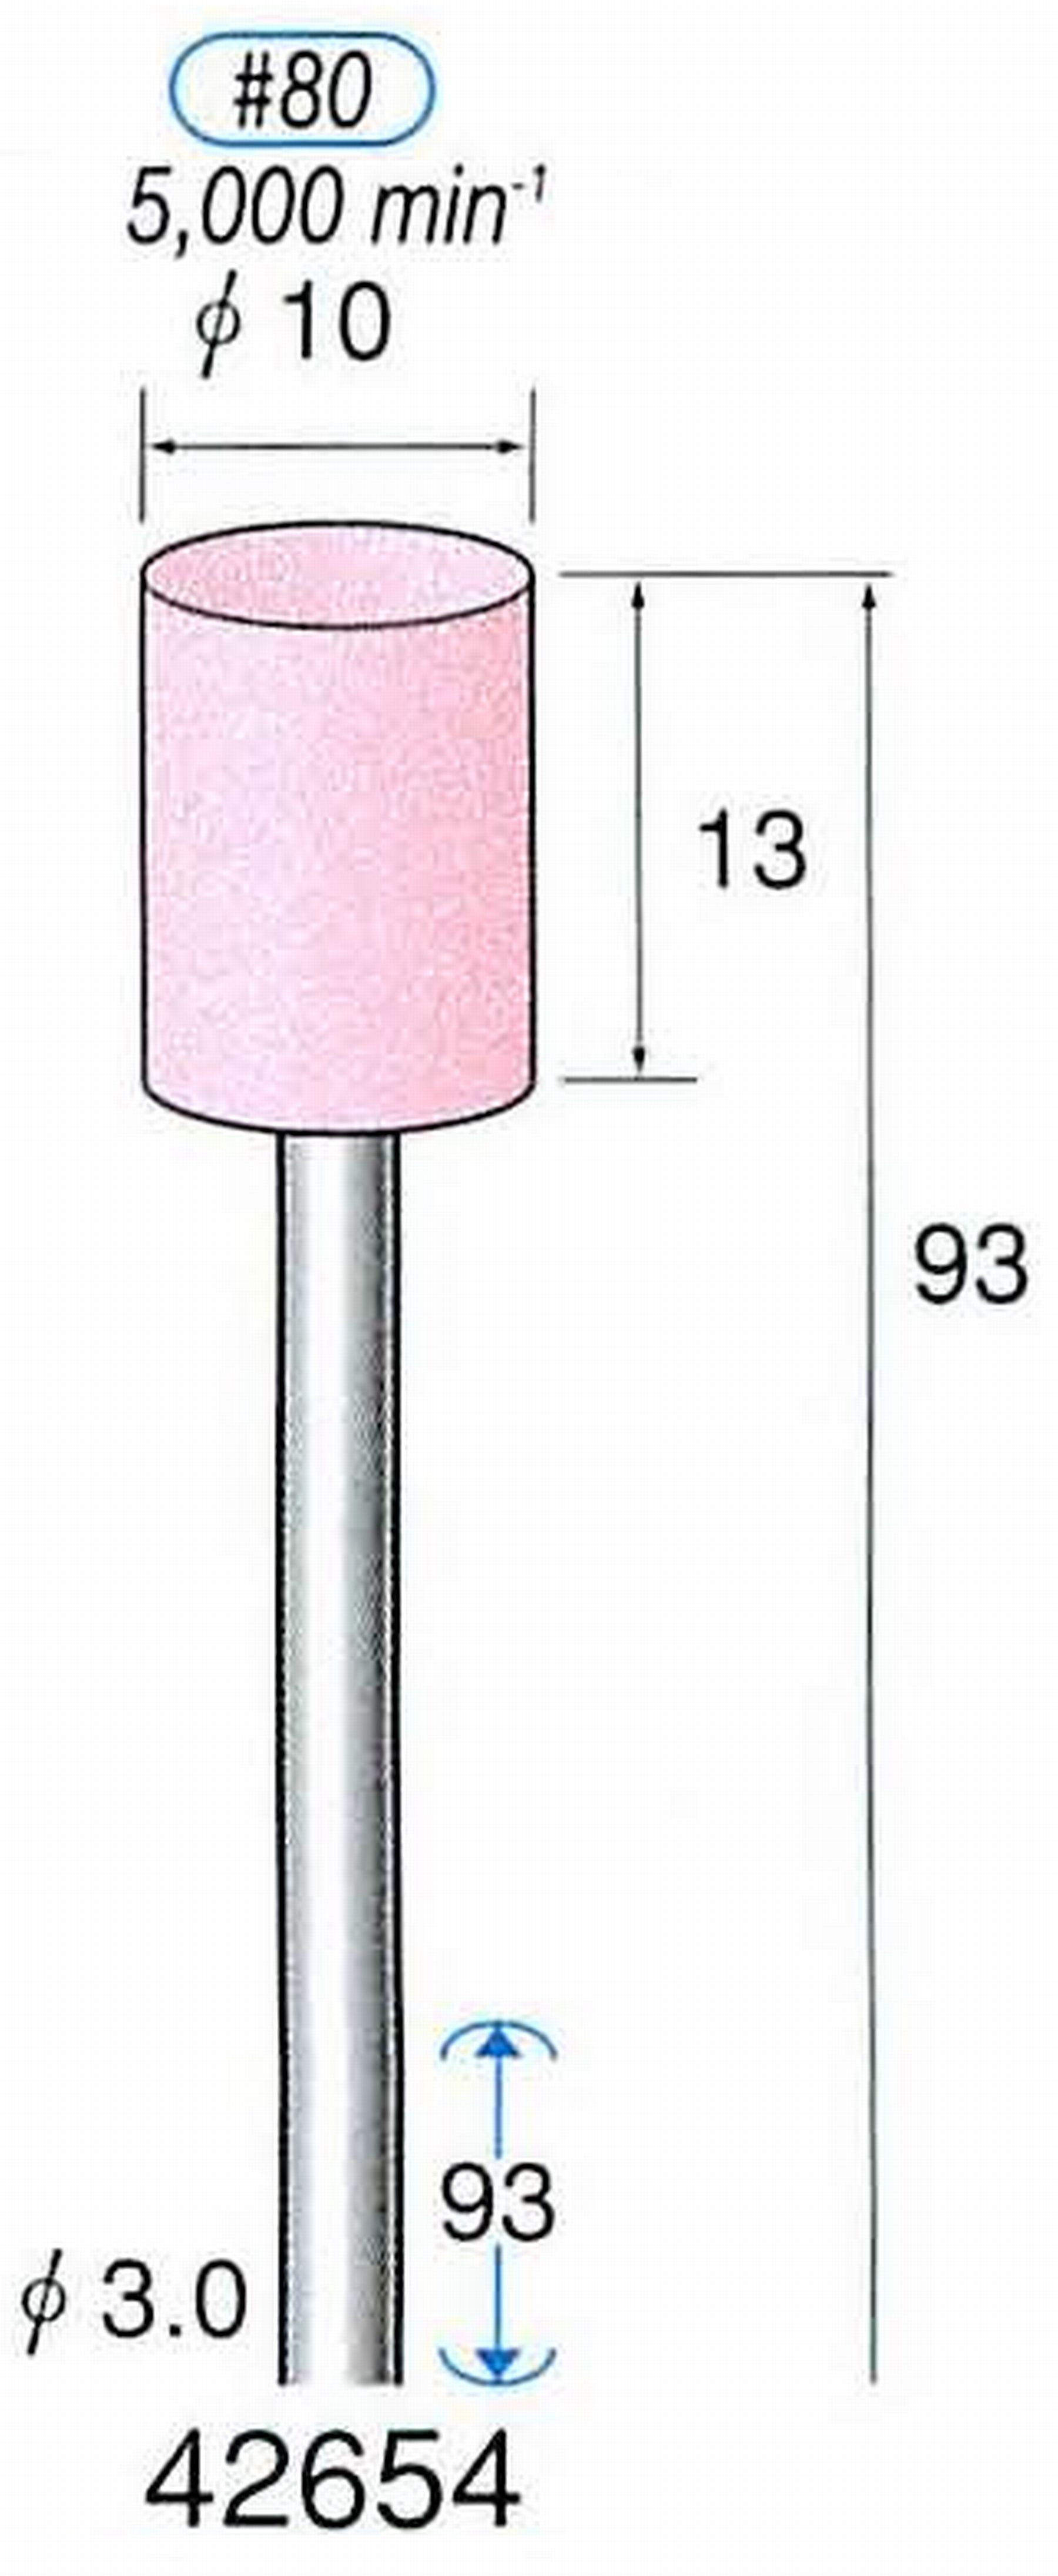 ナカニシ/NAKANISHI 軸付砥石(WA砥粒) 一般研削用(ロングシャフト80mmタイプ) 軸径(シャンク) φ3.0mm 42654